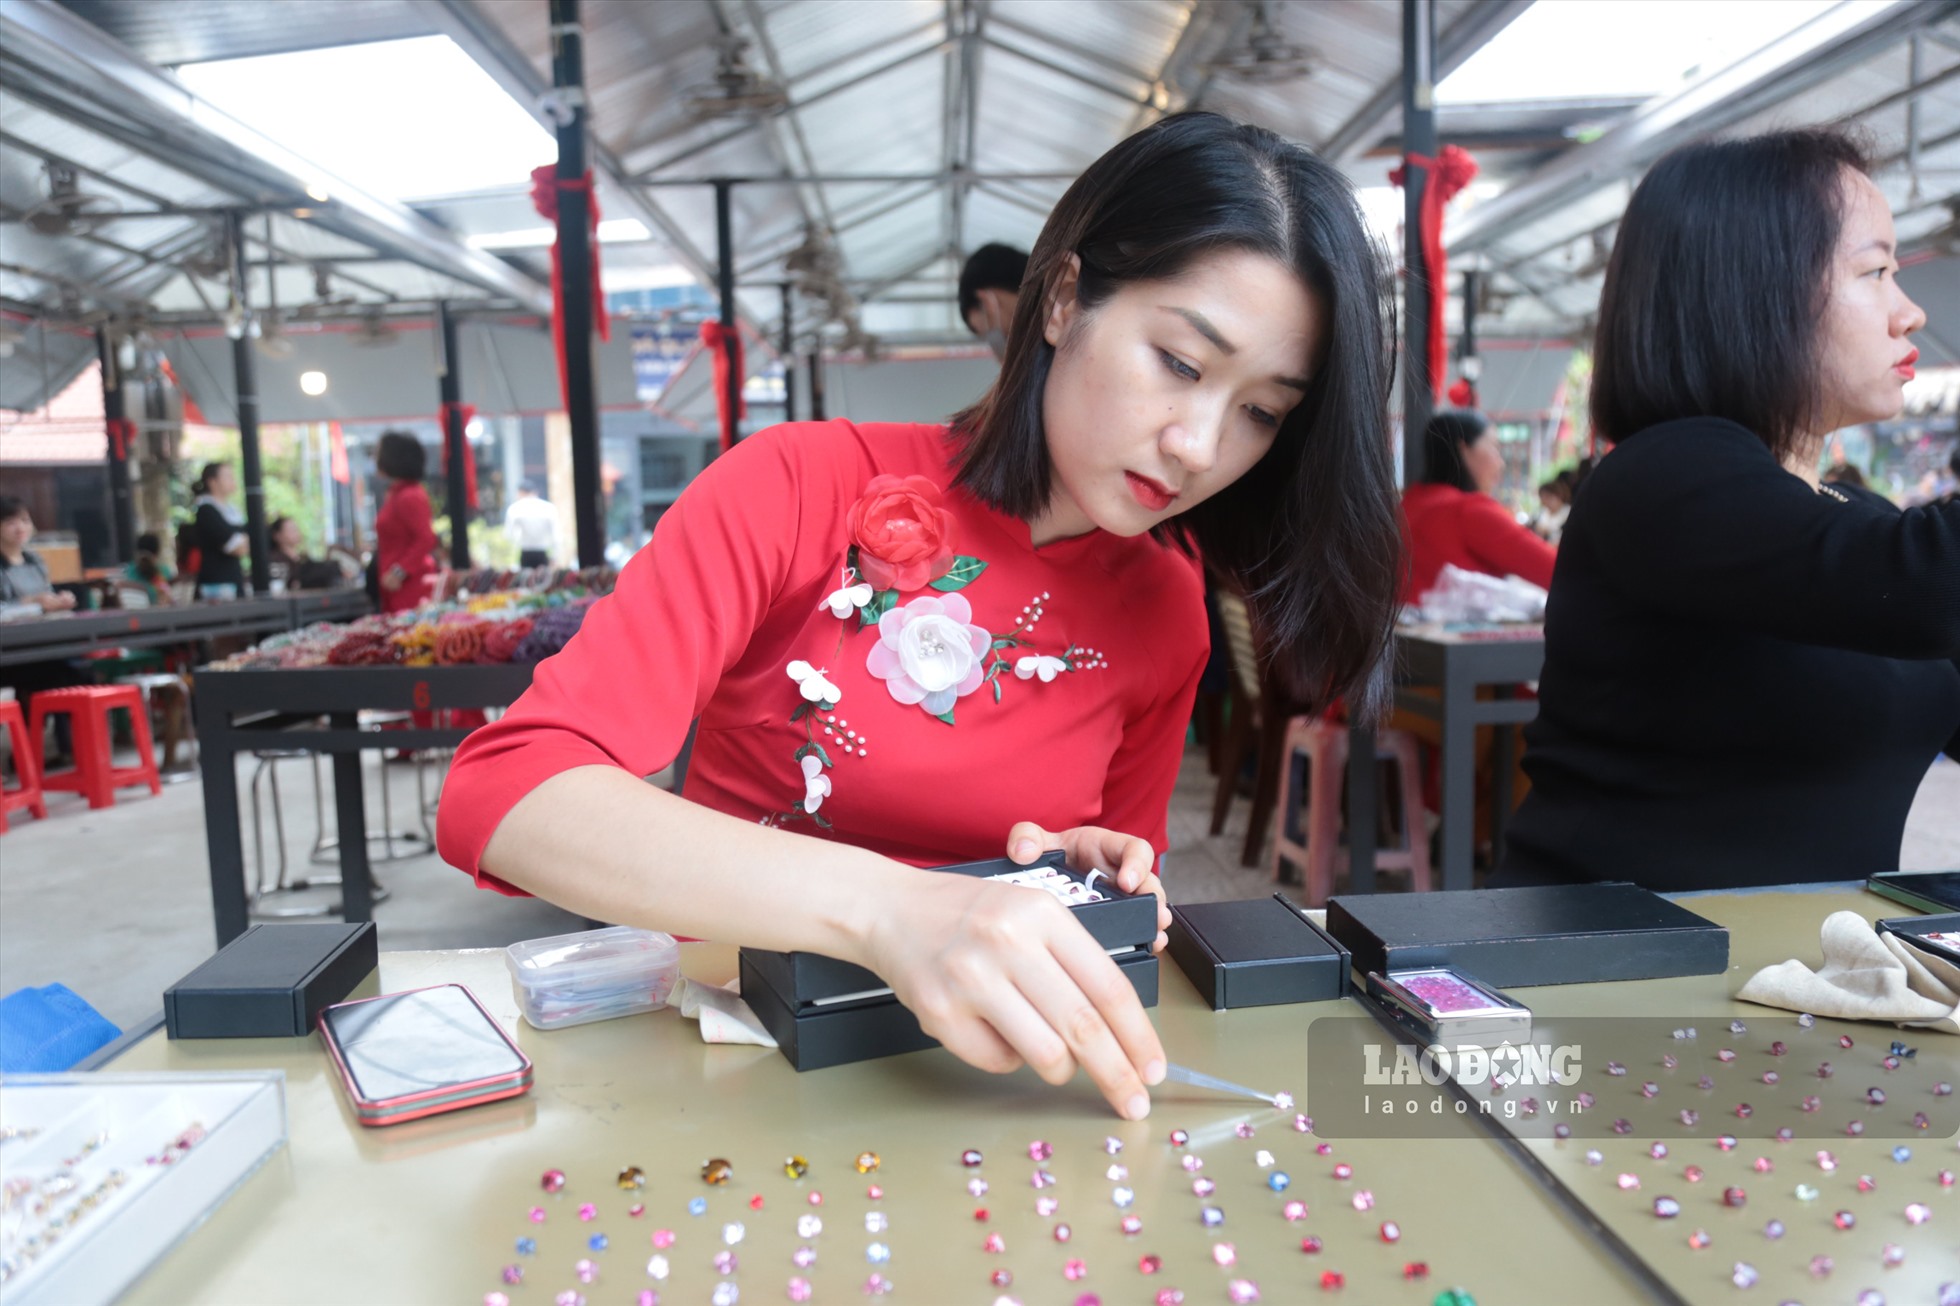 Chợ đá quý Lục Yên là phiên chợ độc nhất tại Việt Nam, nơi những viên đá quý được bày bán như mớ rau và người mua có thể tùy chọn trả giá.